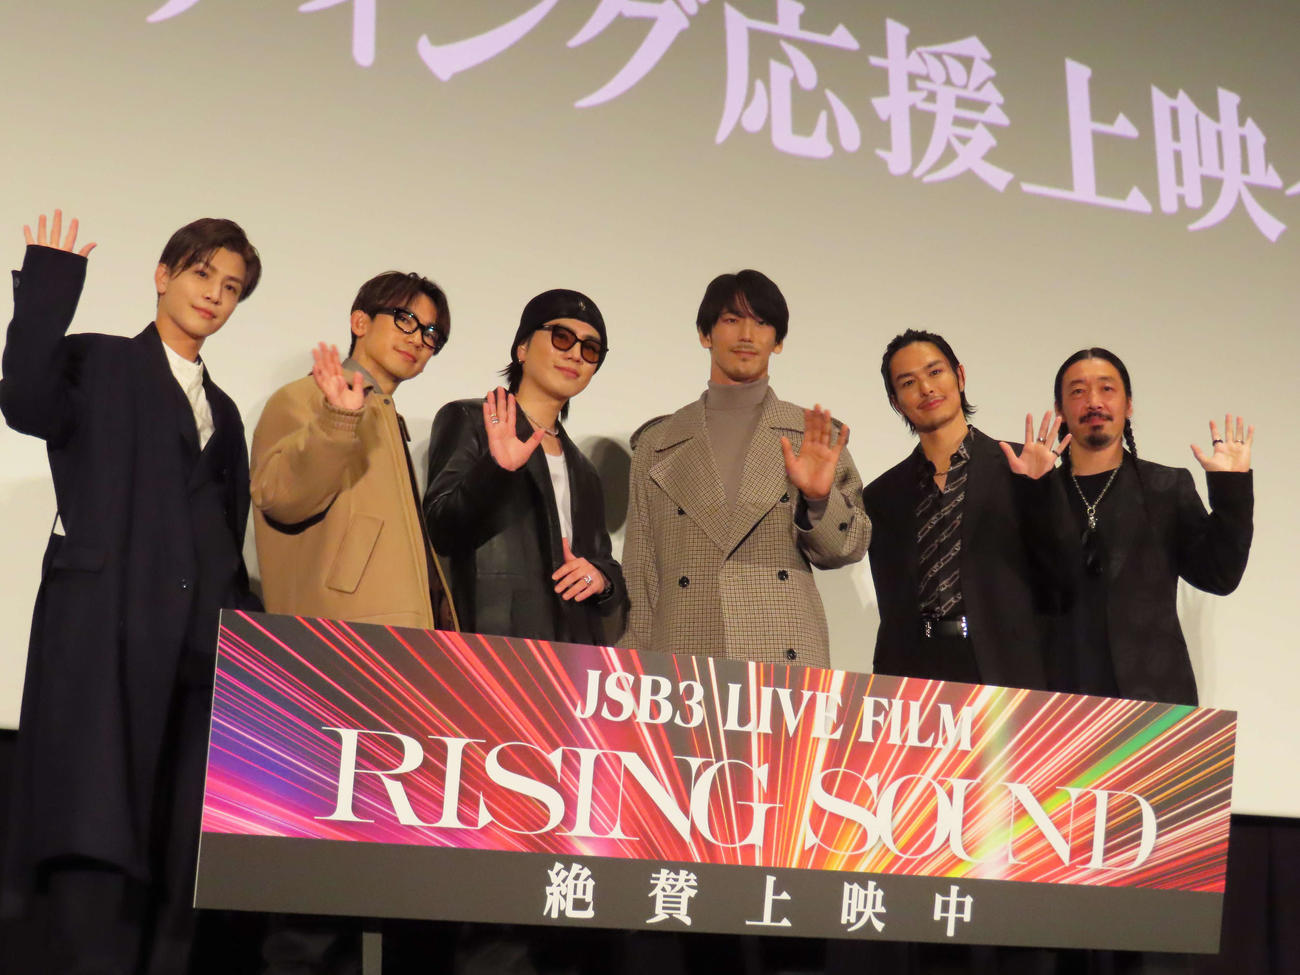 「JSB3 LIVE FILM／RISING SOUND」上映イベントに出席した、左から岩田剛典、NAOTO、ΦMI、小林直己、今市隆二、二宮”NINO”大輔監督